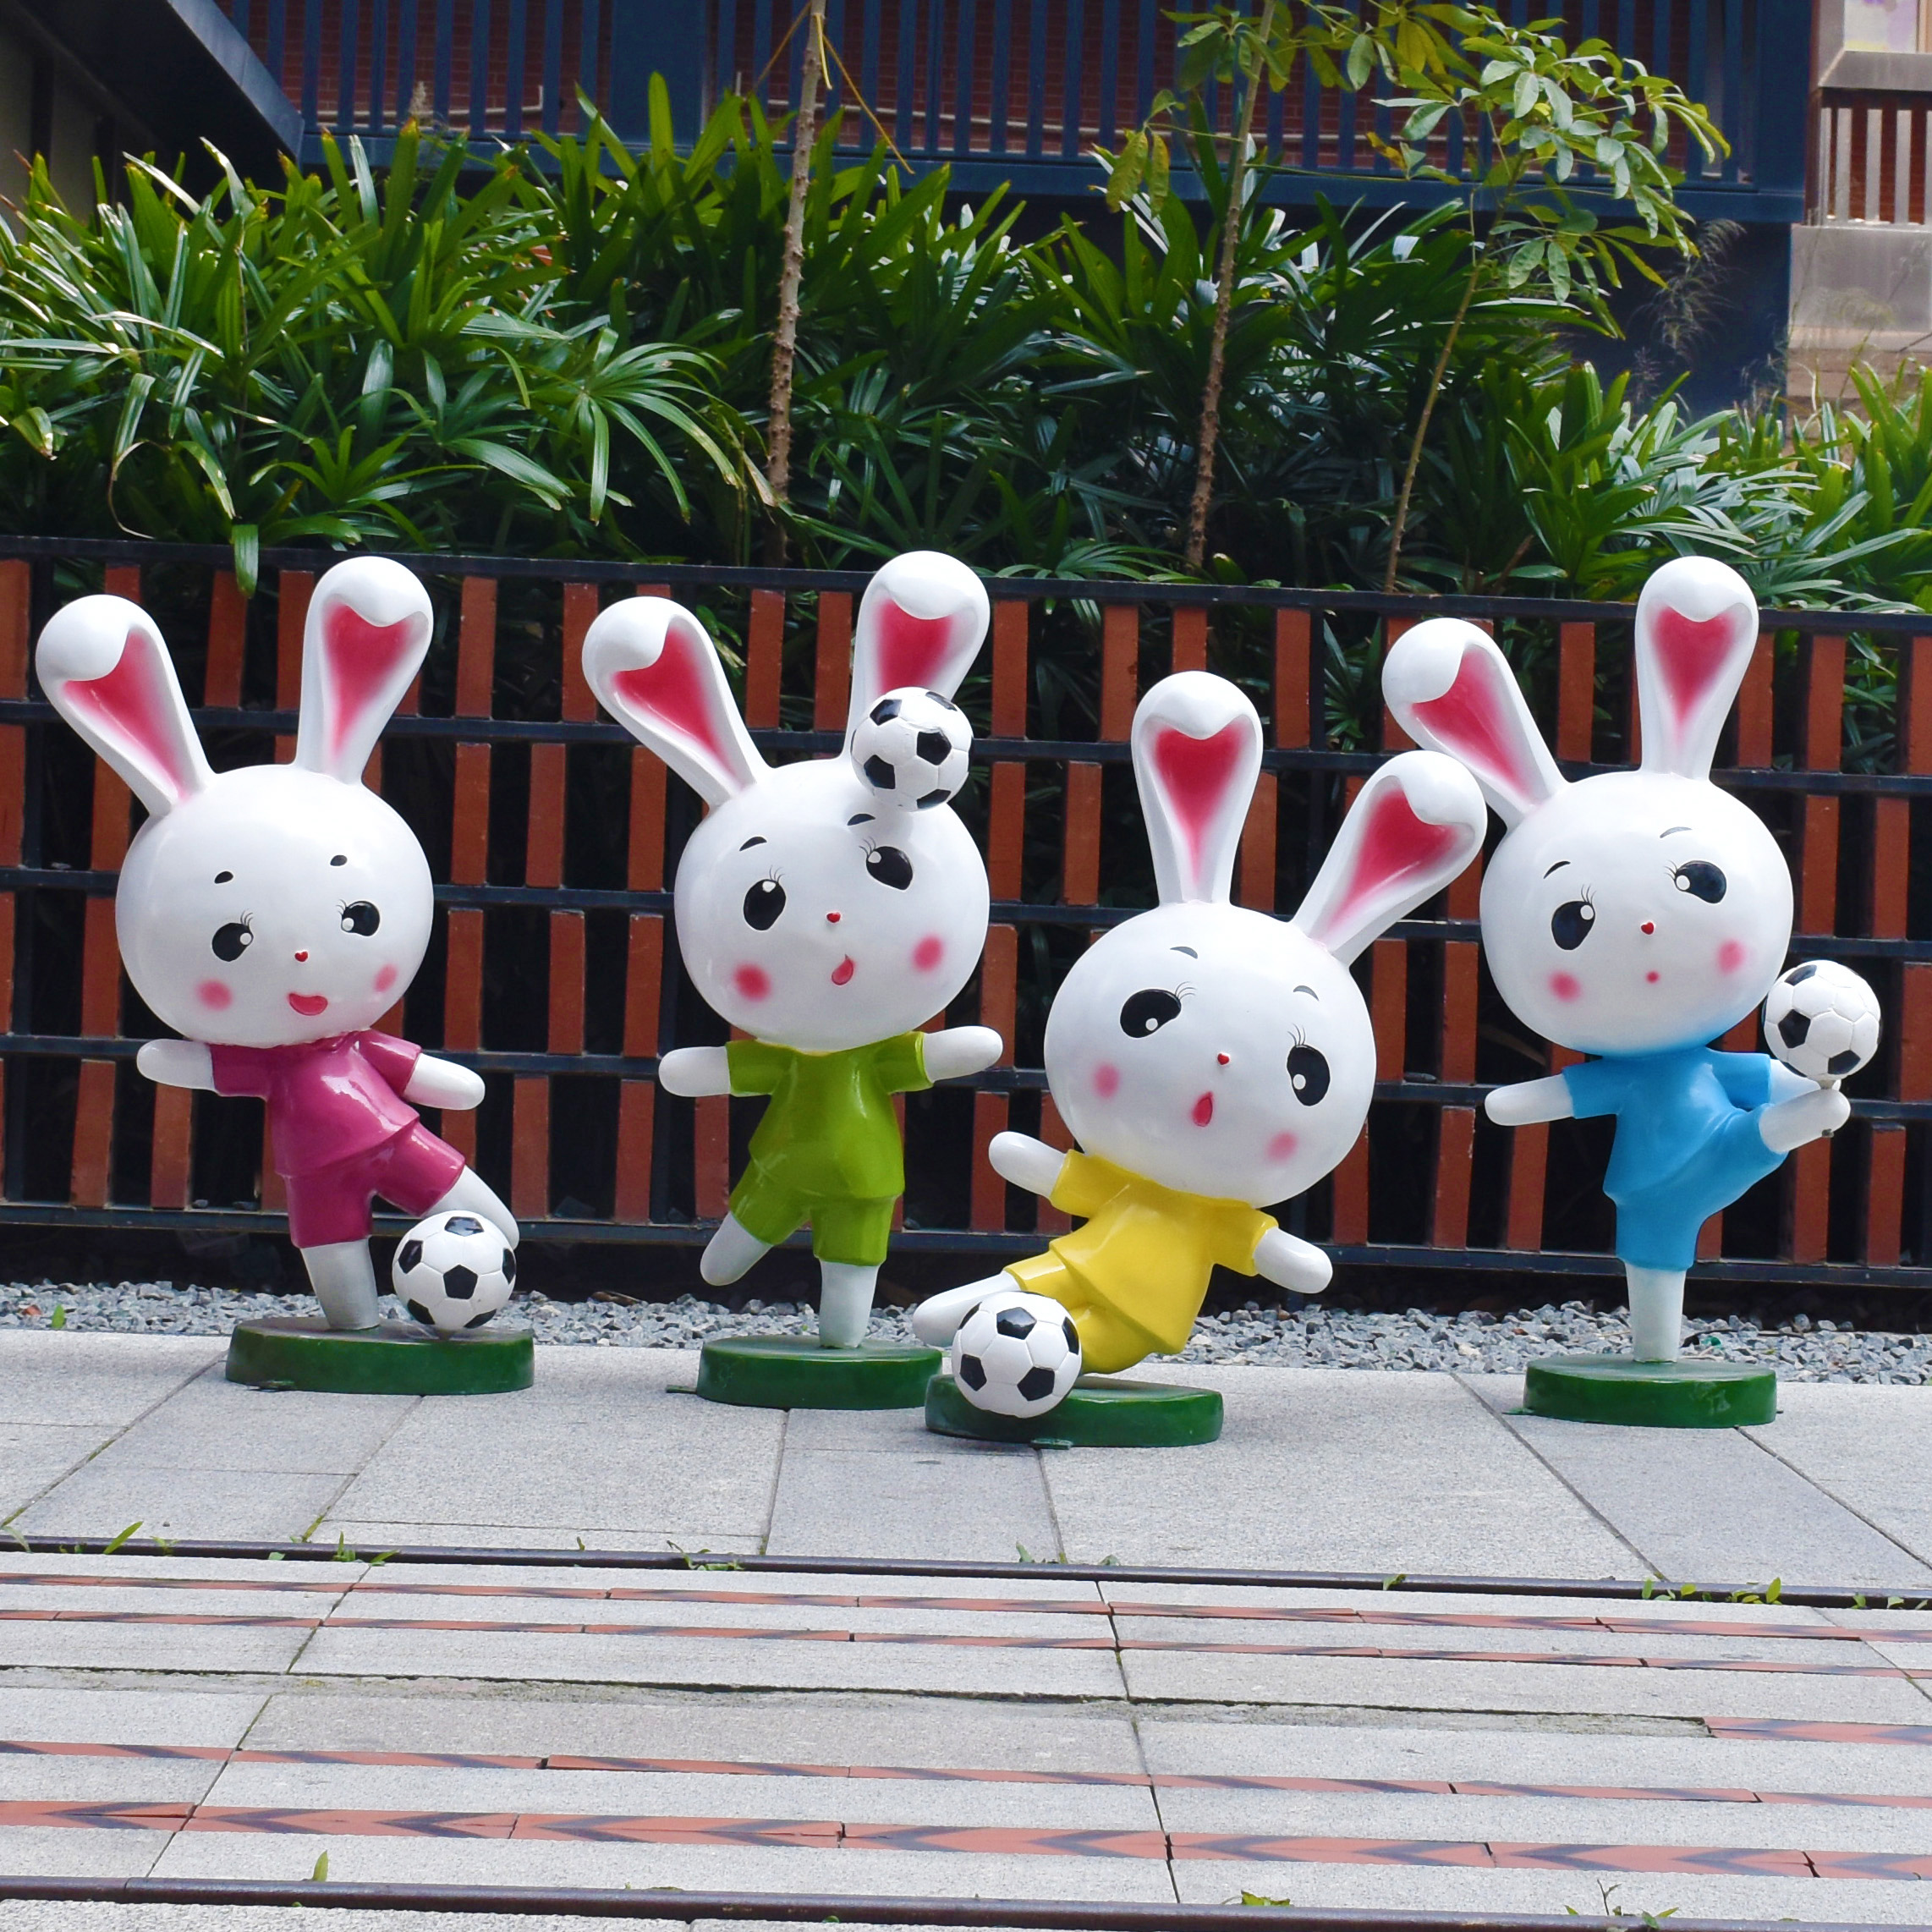 户外庭院商场园林幼儿园景观仿真卡通足球兔子吉祥物装饰雕塑摆件